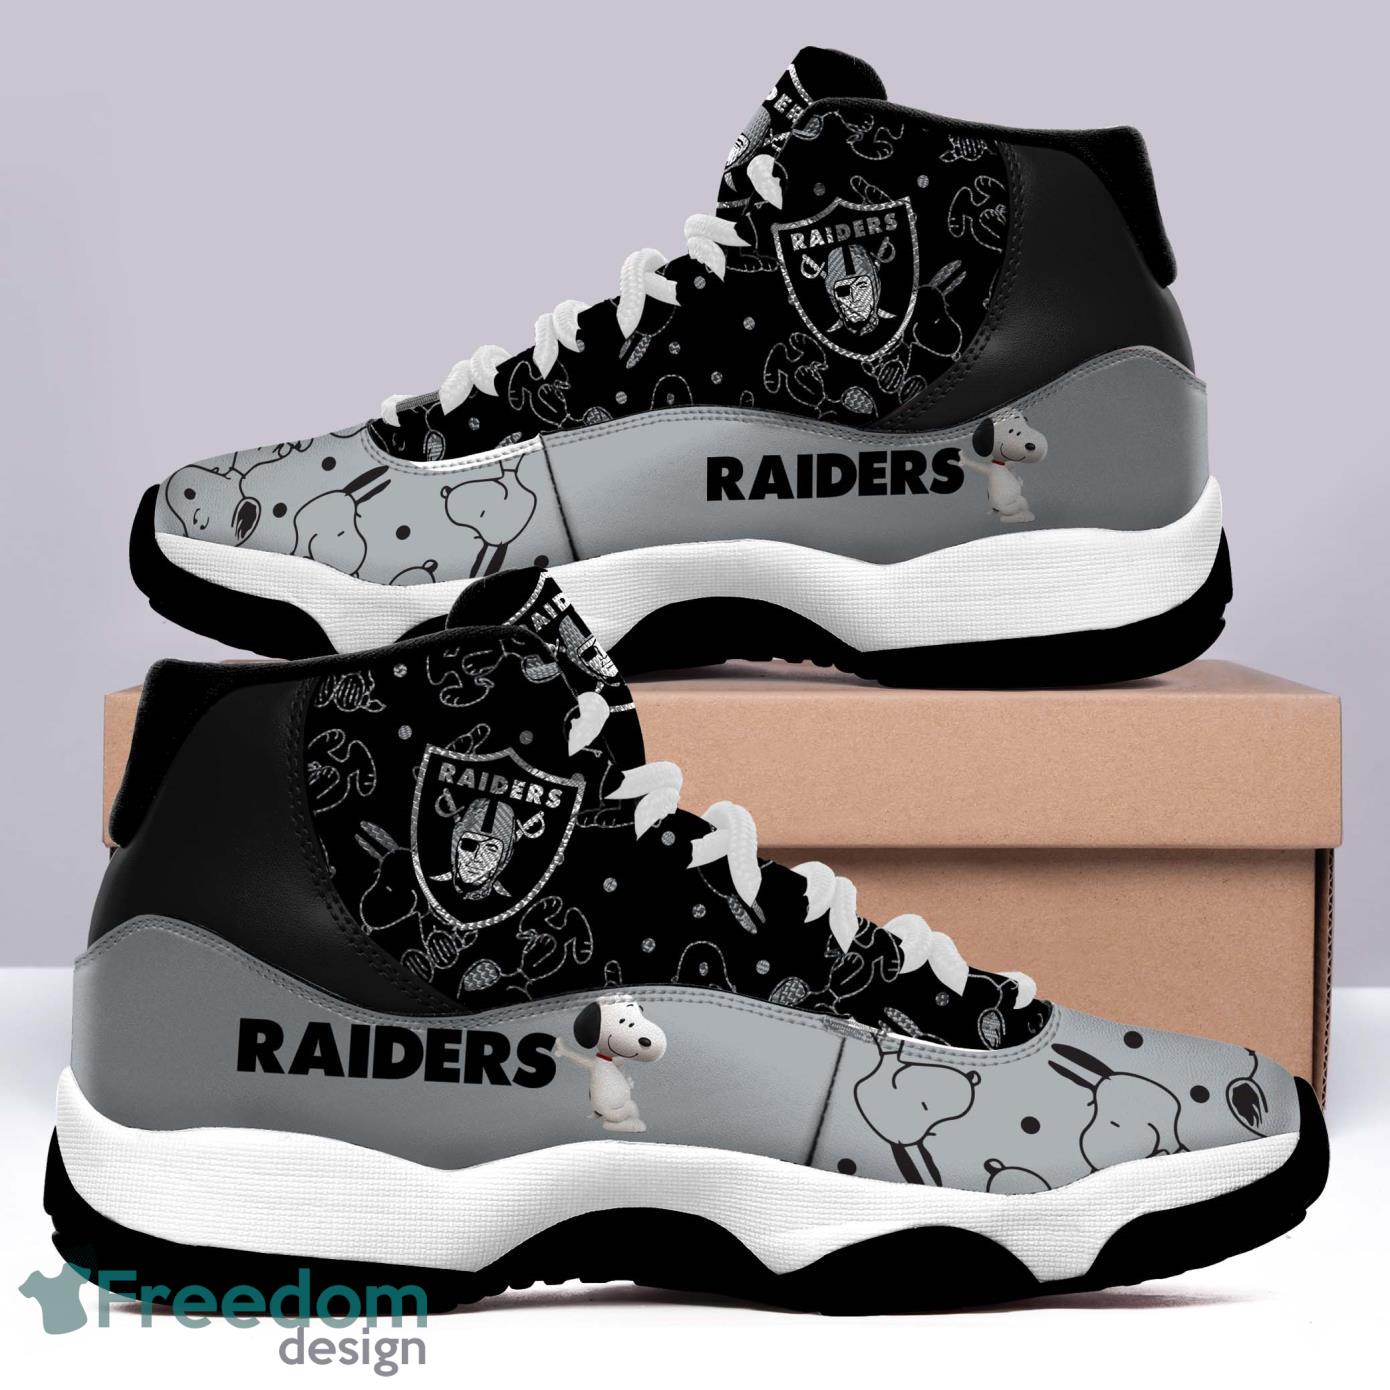 Las Vegas Raiders Air Jordan 11 Custom Name Shoes - Freedomdesign